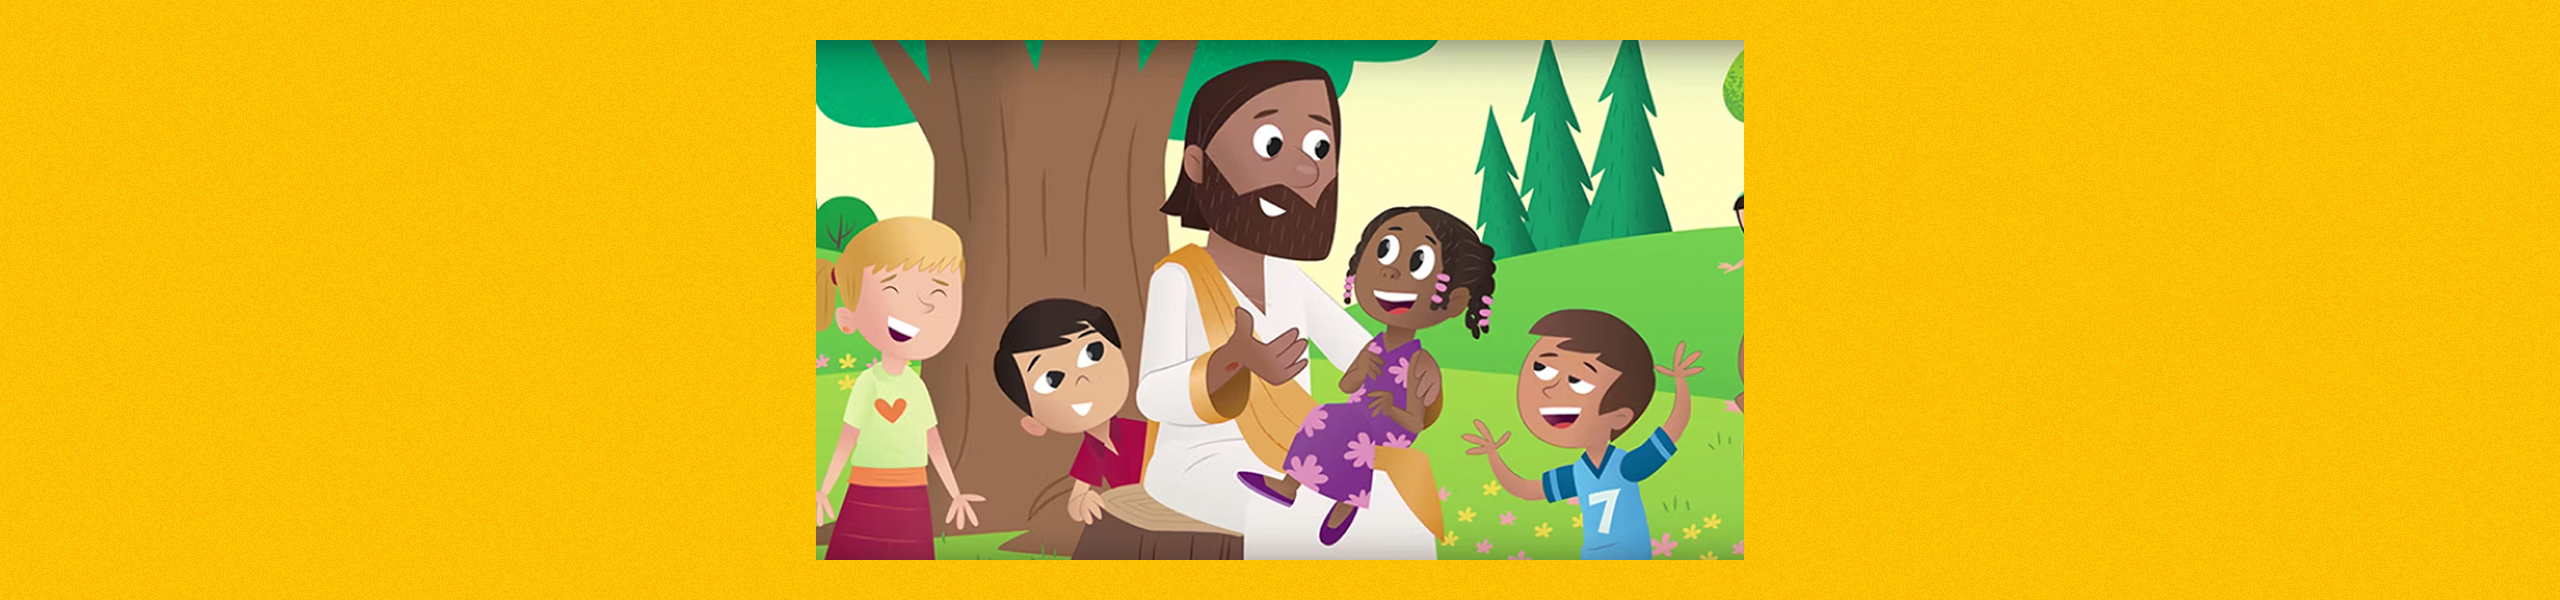 Bible Stories for Kids | LifeKids